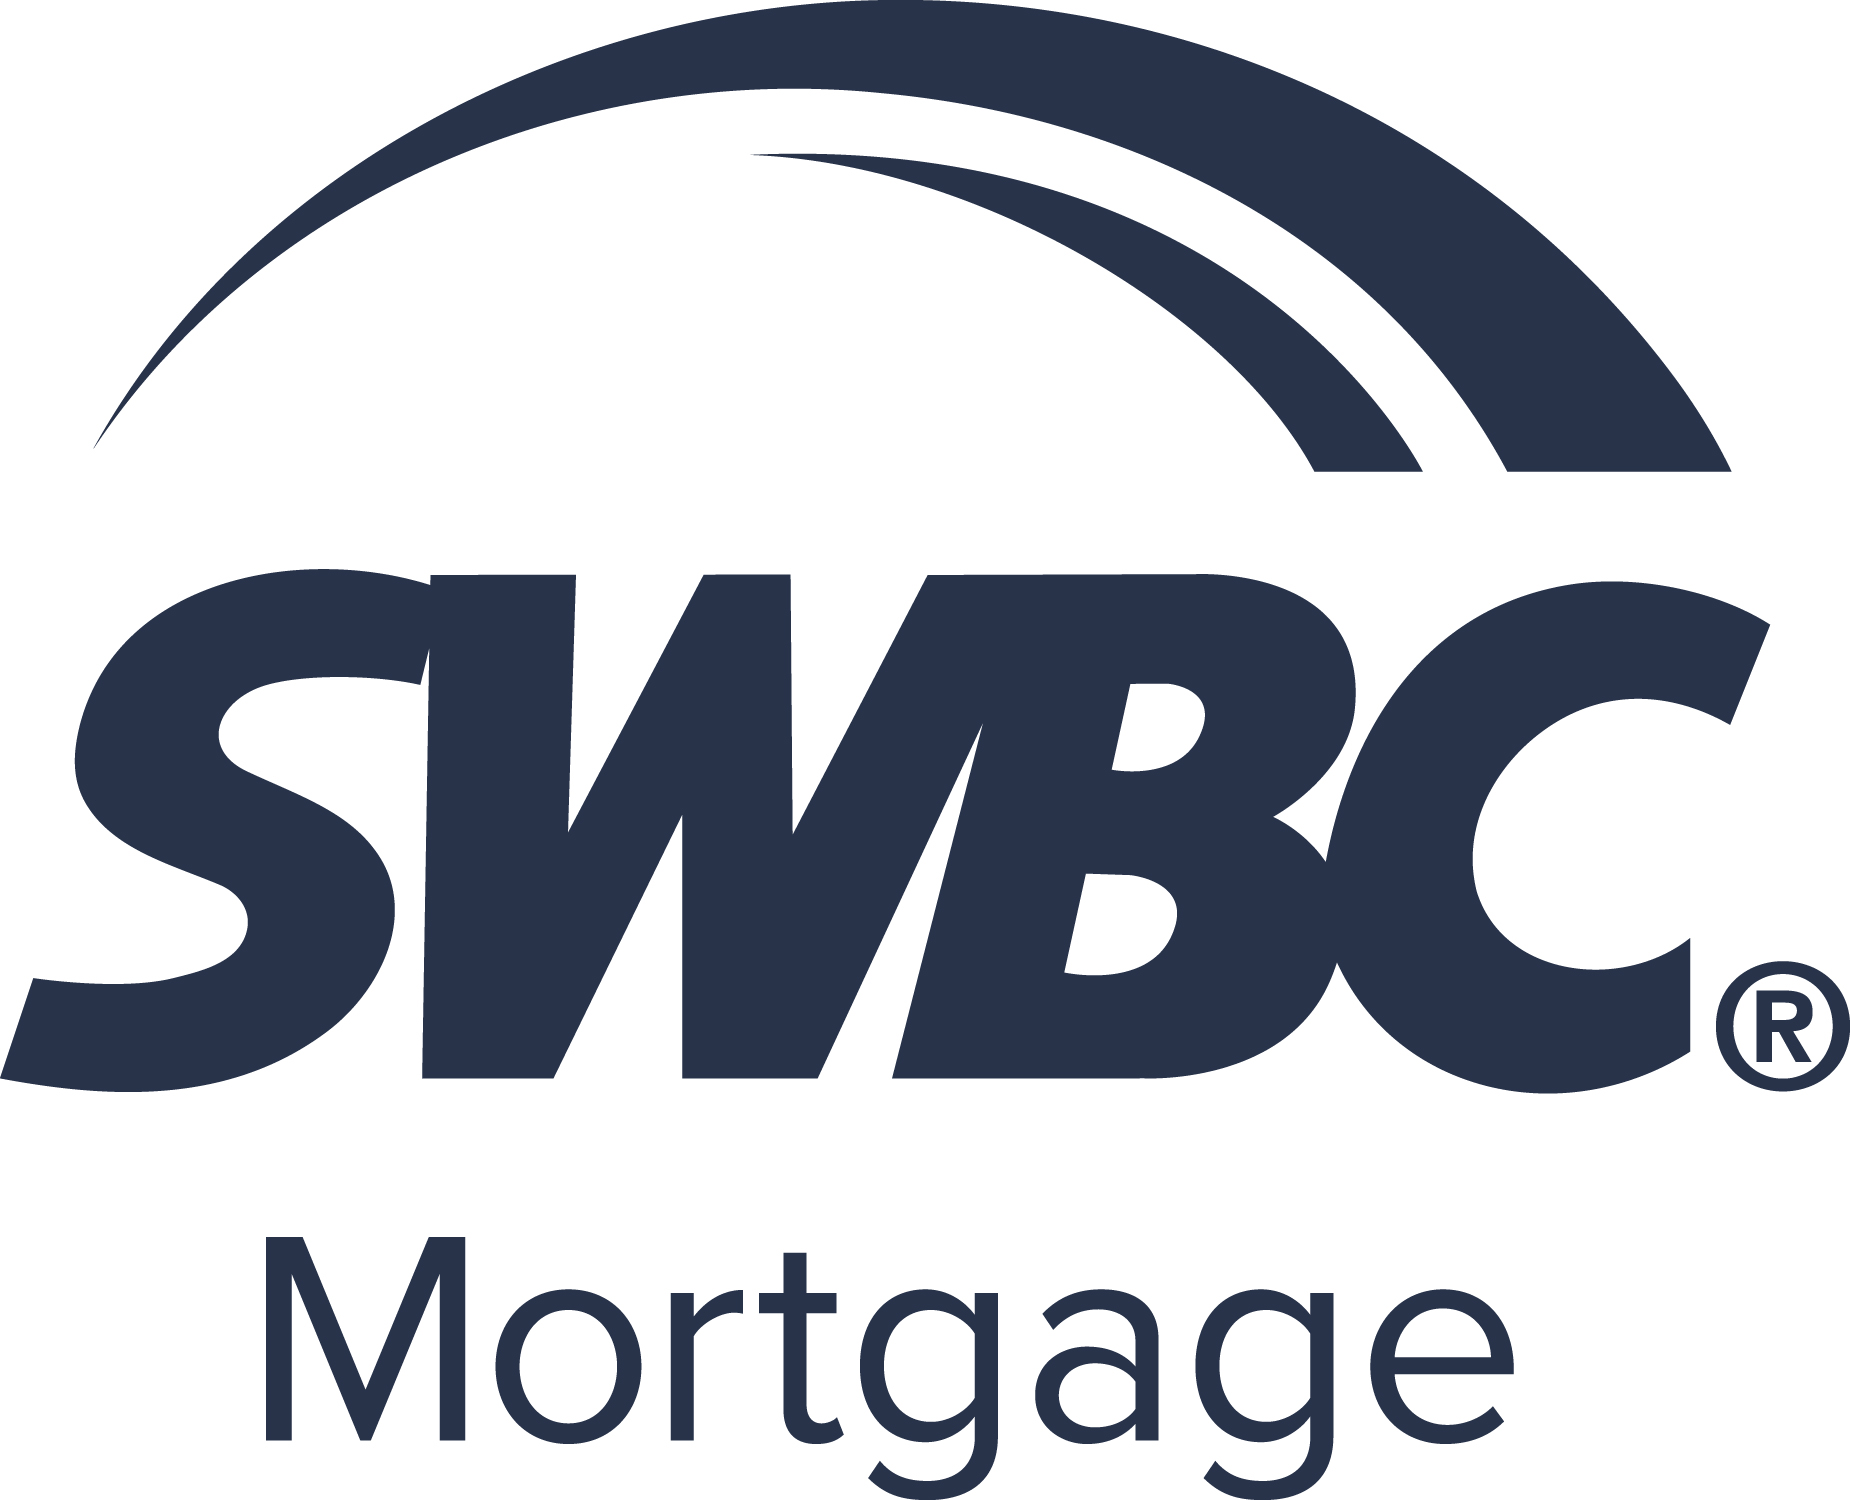 SWBC_Mortgage_RGB LOGO.jpg